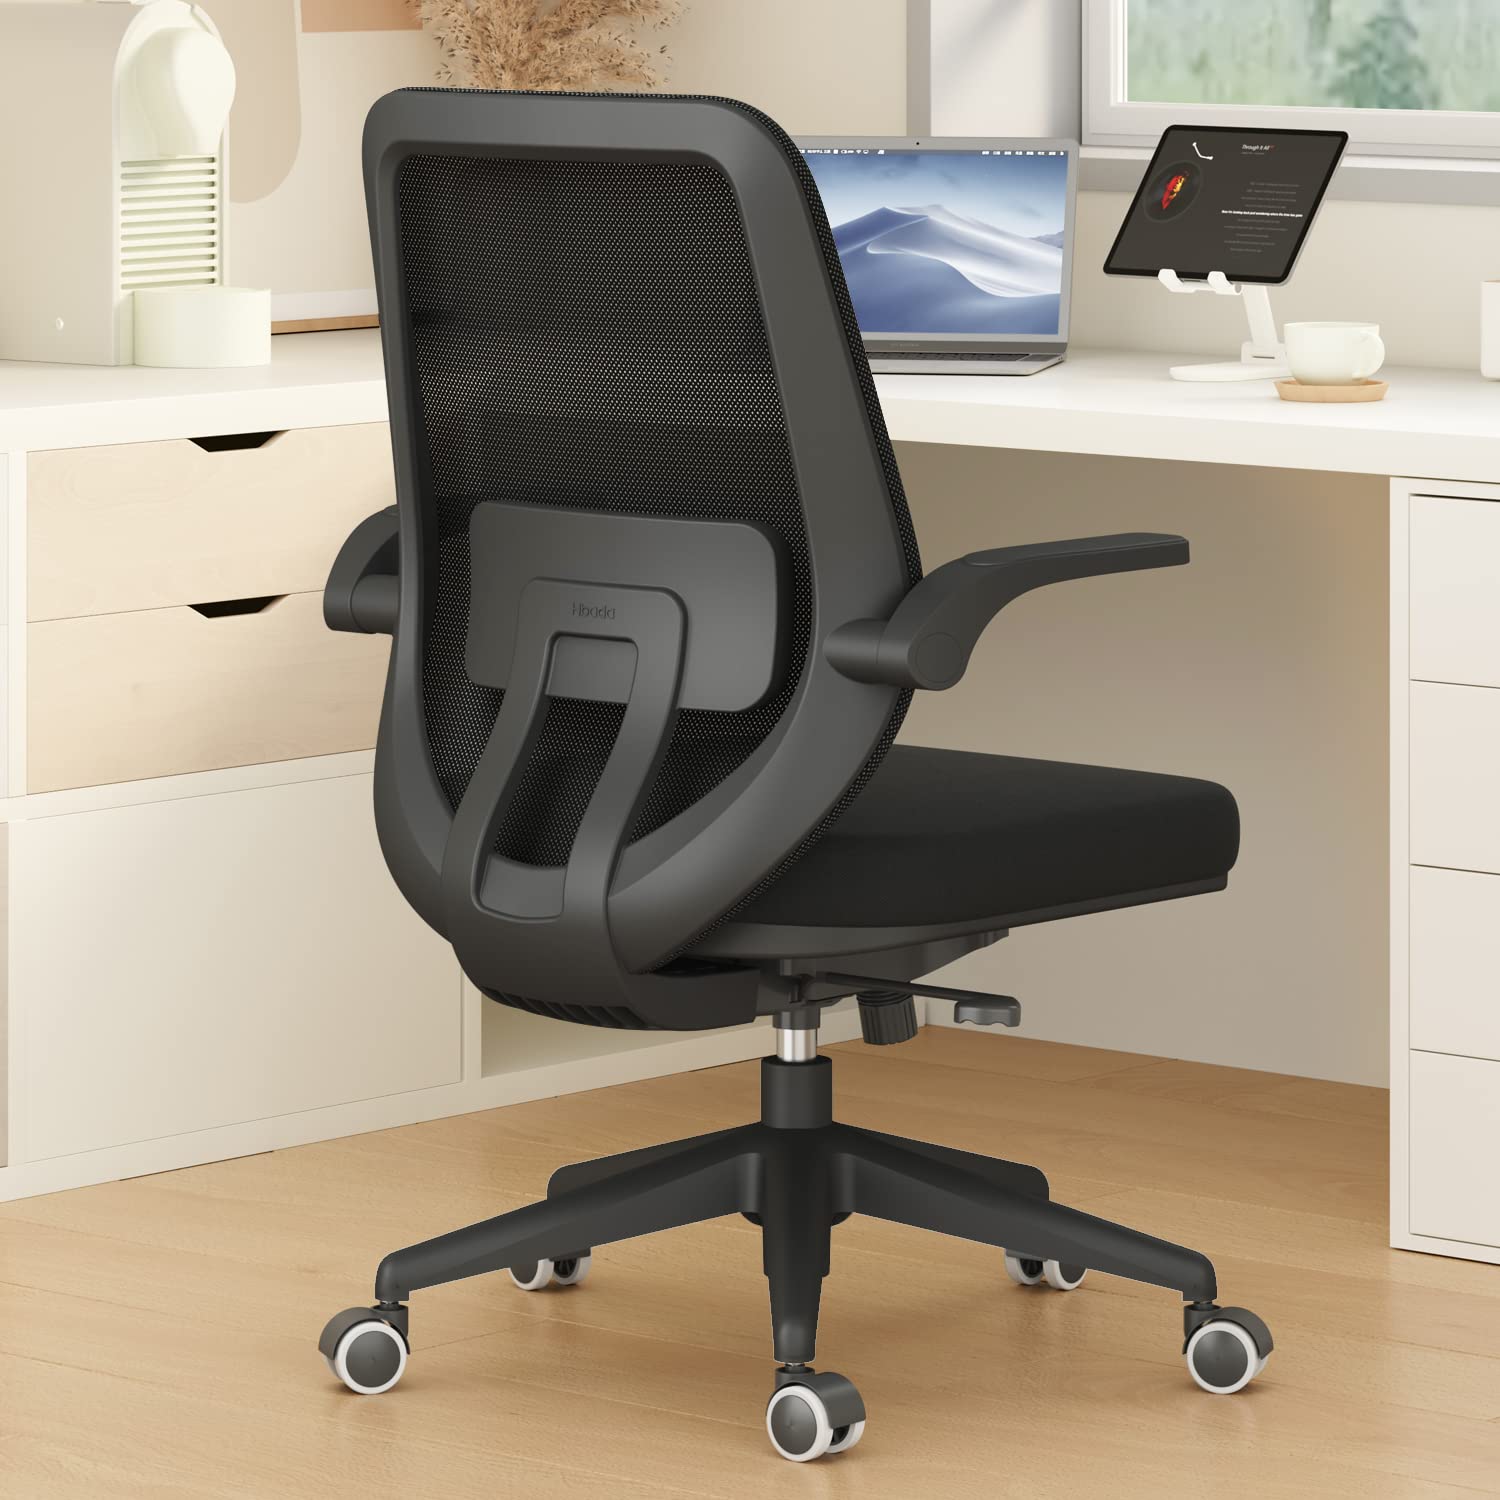 Hbada Chaise de bureau Chaise de bureau pivotante Chaises de confort pour la maison avec accoudoirs rabattables et hauteur réglable